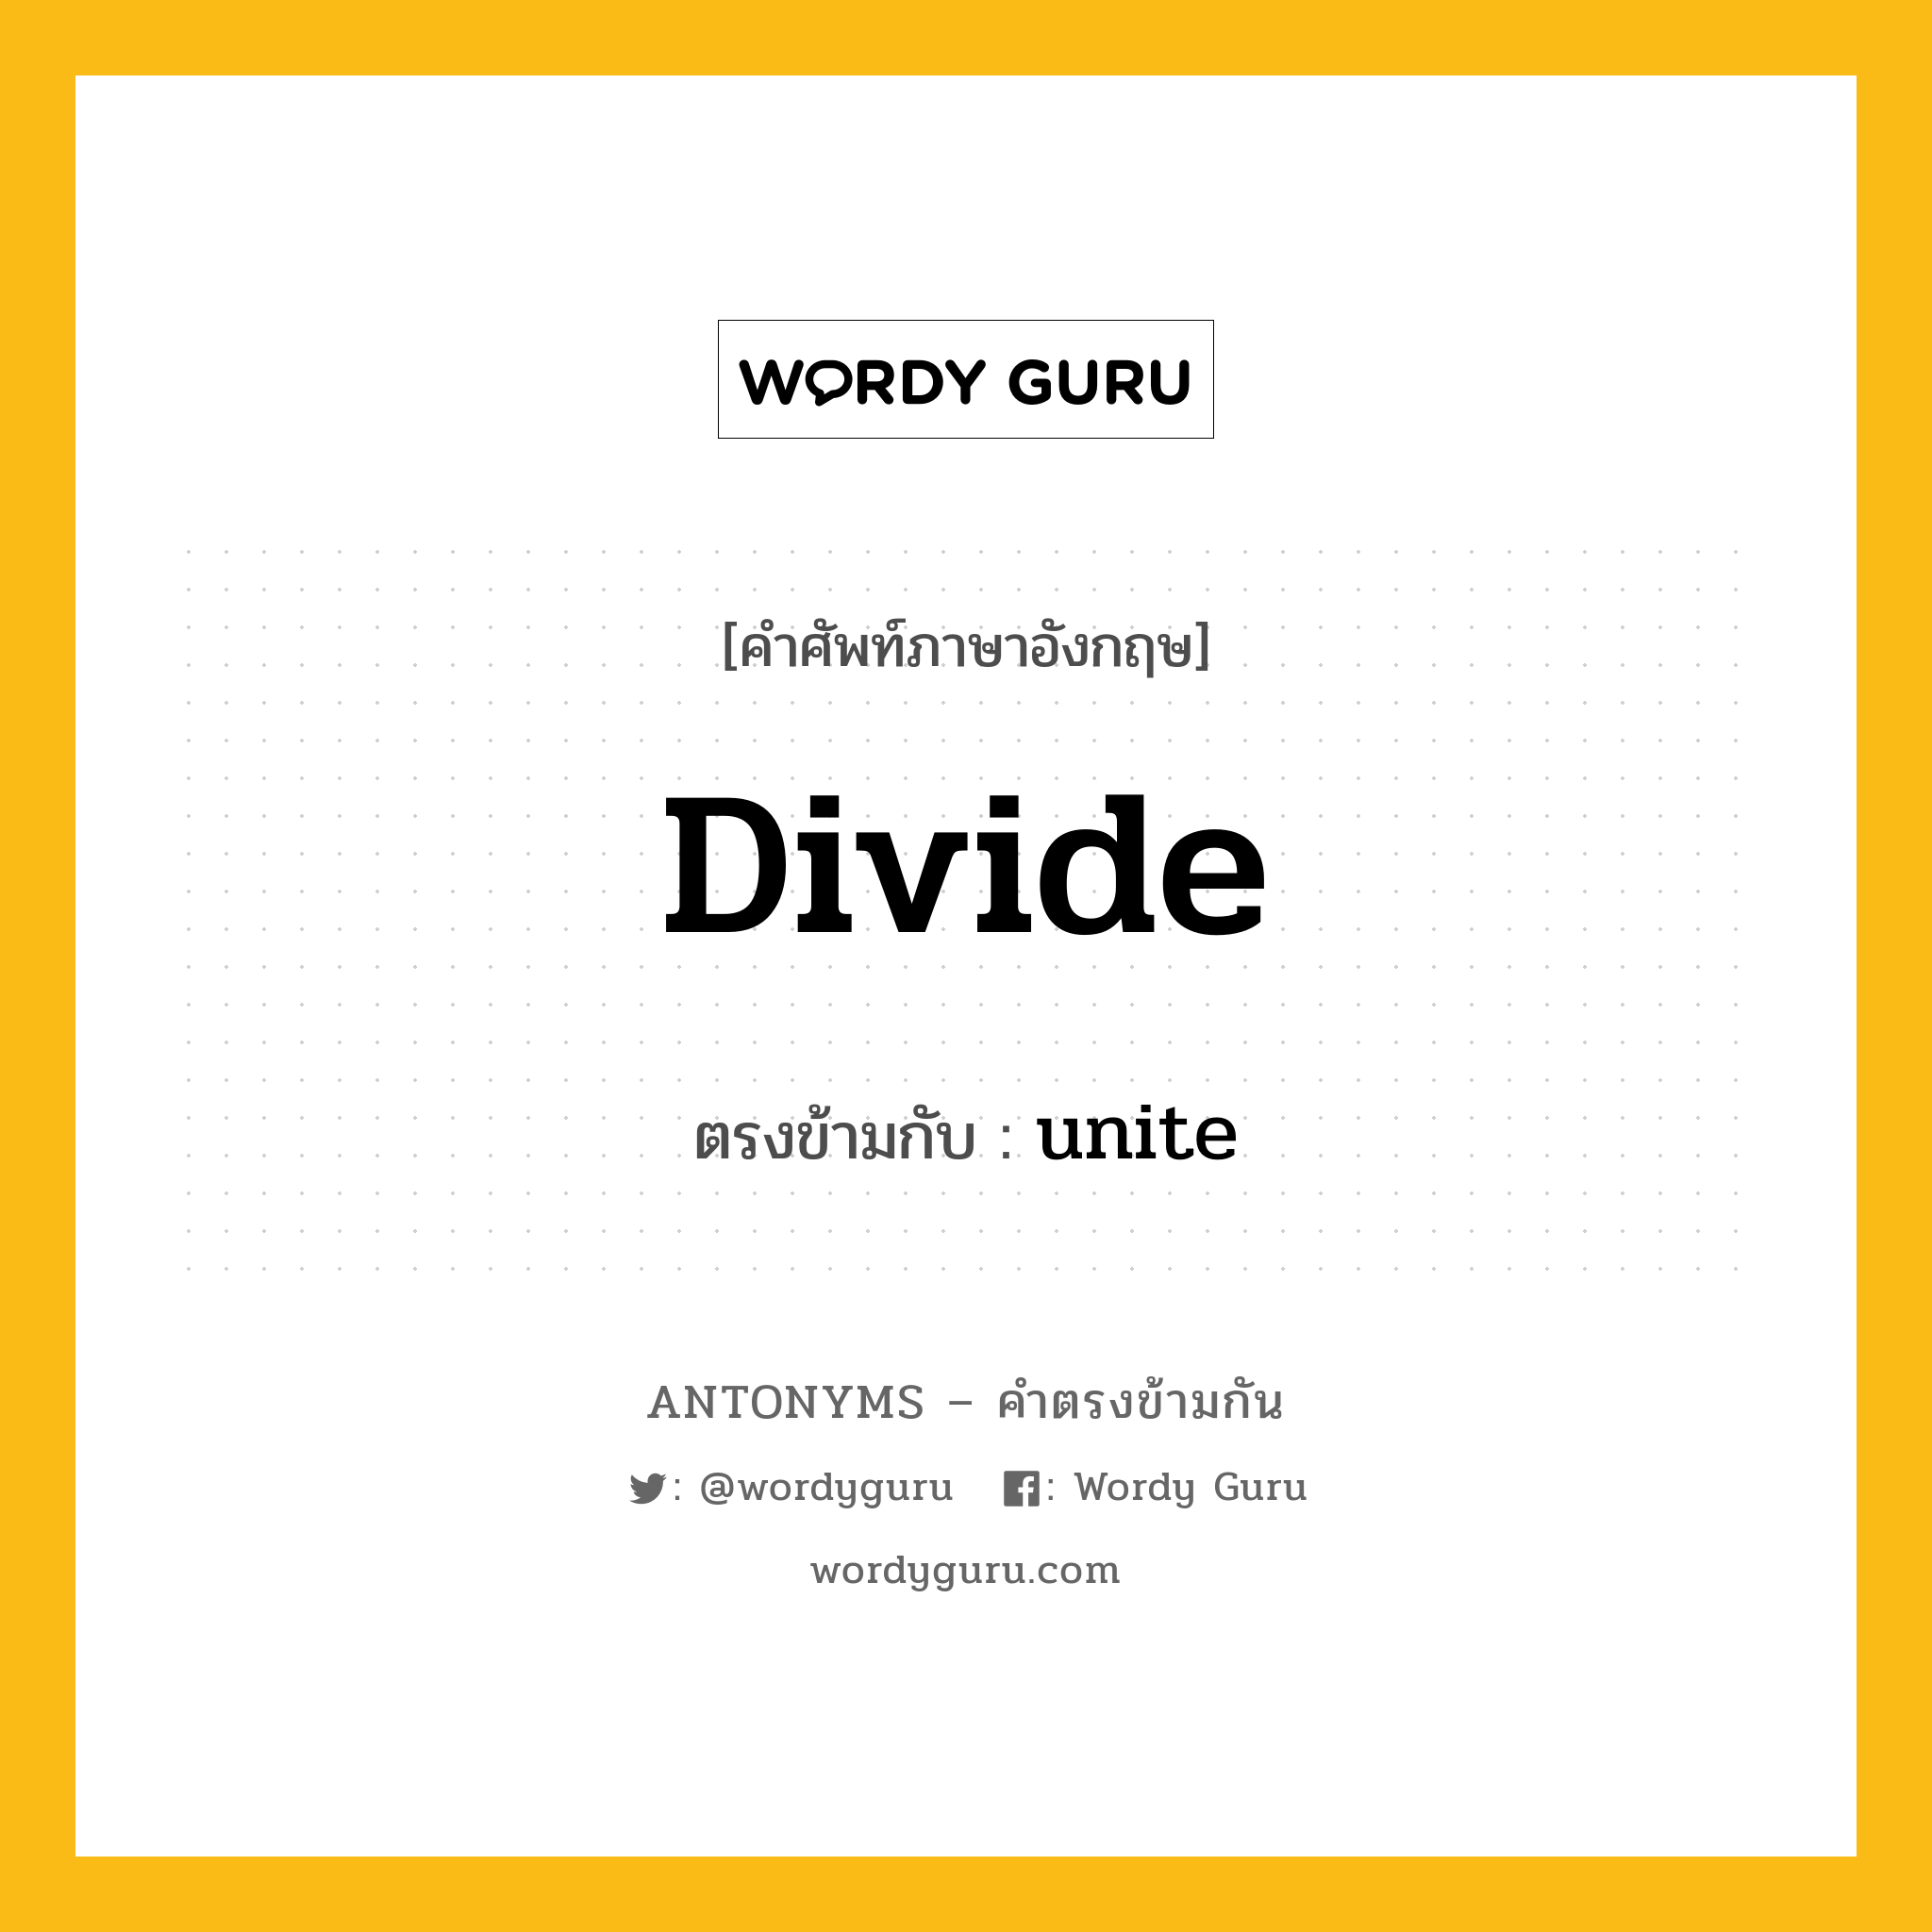 divide เป็นคำตรงข้ามกับคำไหนบ้าง?, คำศัพท์ภาษาอังกฤษที่มีความหมายตรงข้ามกัน divide ตรงข้ามกับ unite หมวด unite